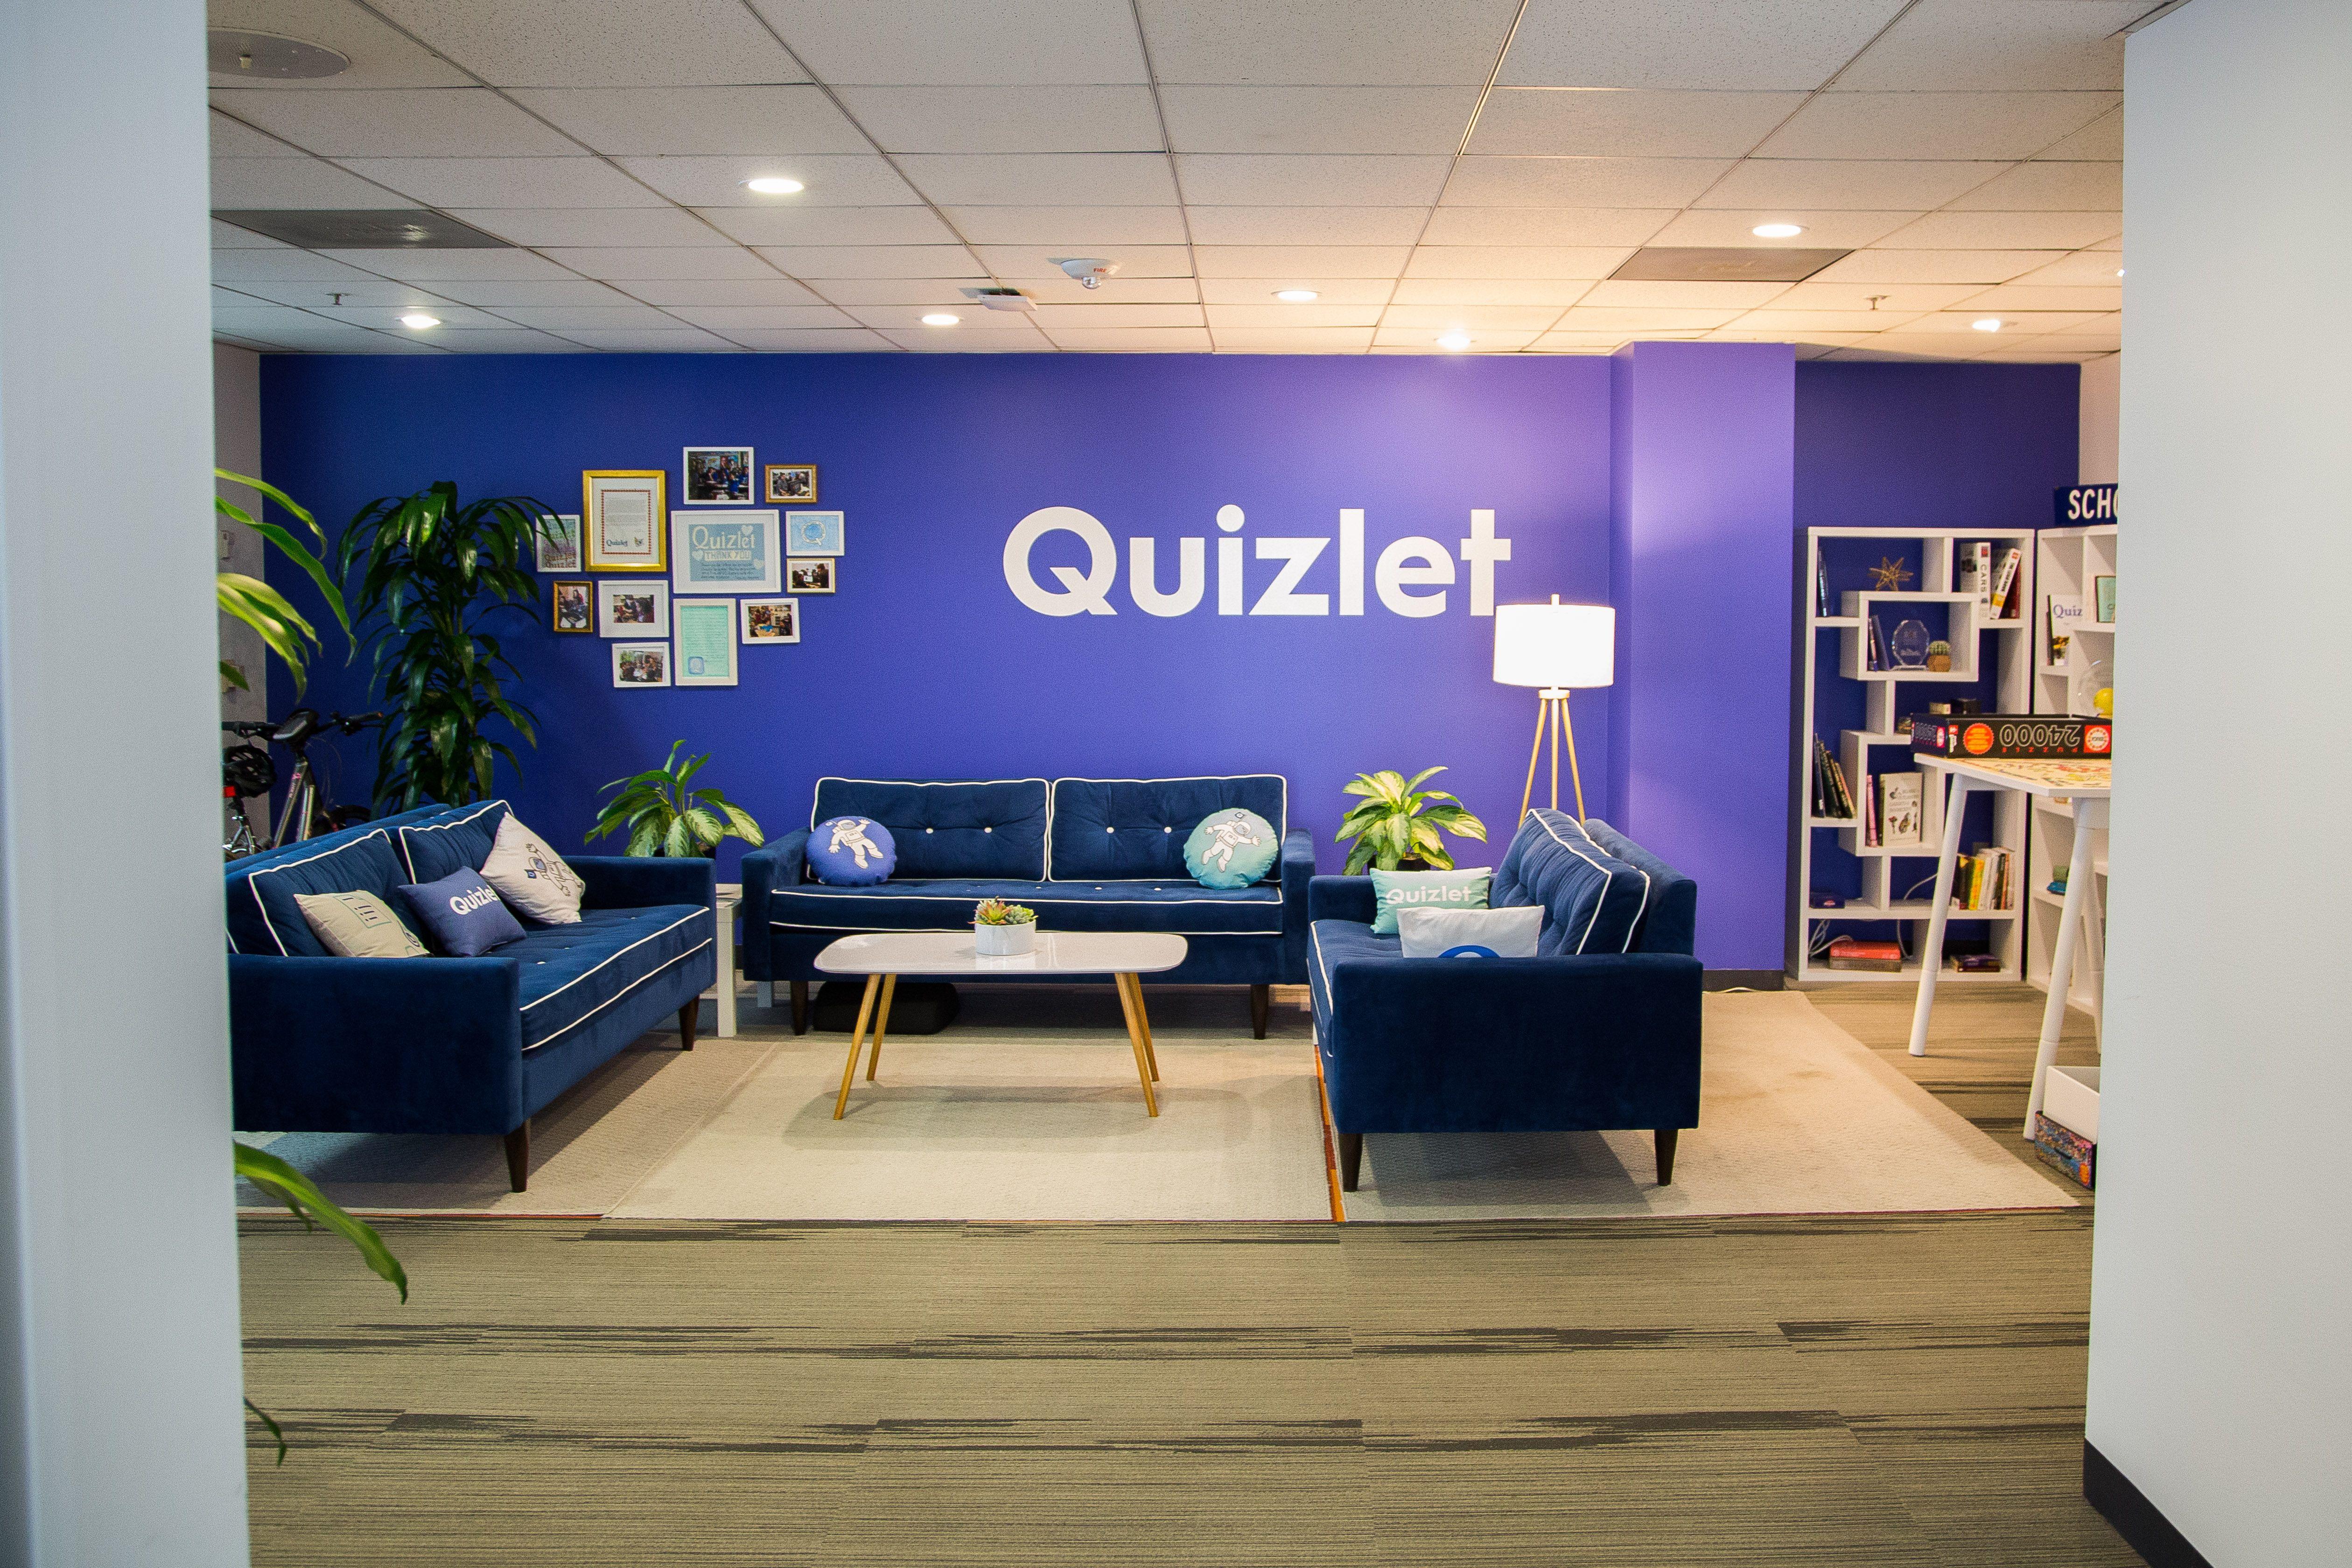 Cool Blue Quizlet Logo - Quizlet is coming to Denver | Quizlet